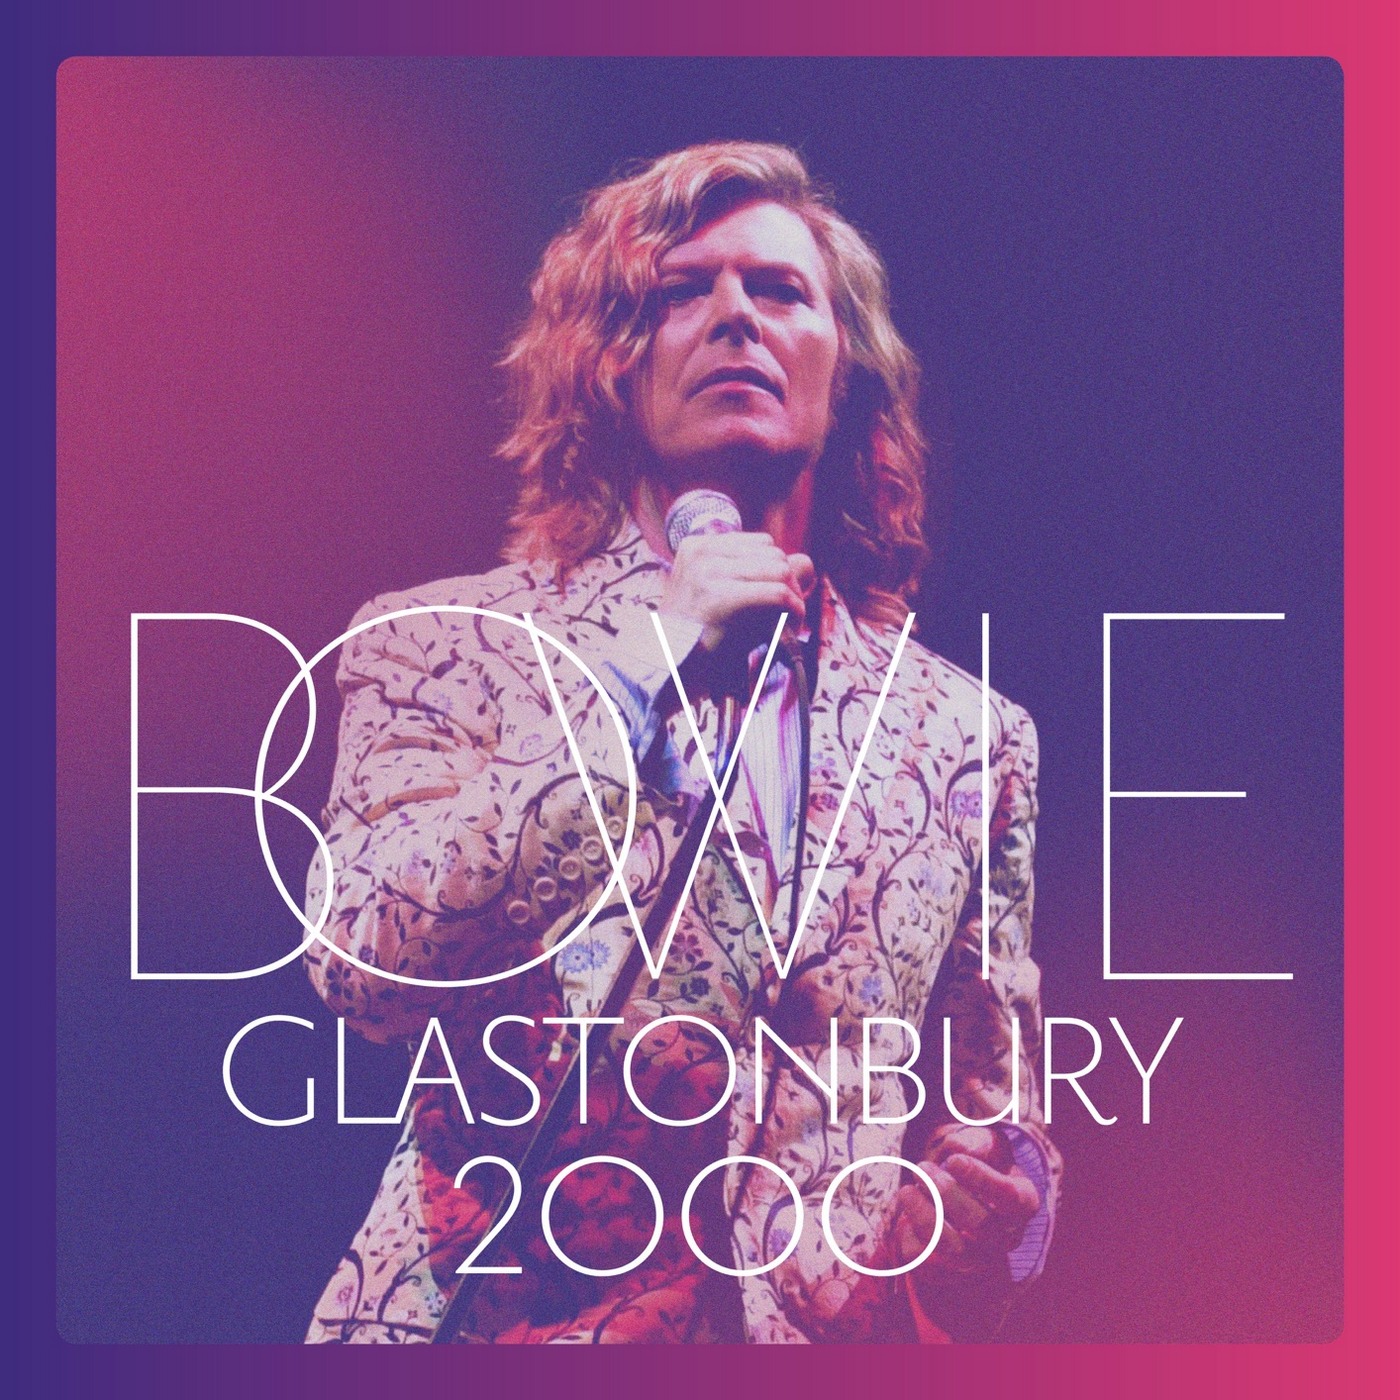 David Bowie - 2018 - Glastonbury 2000 [2018] 24-48